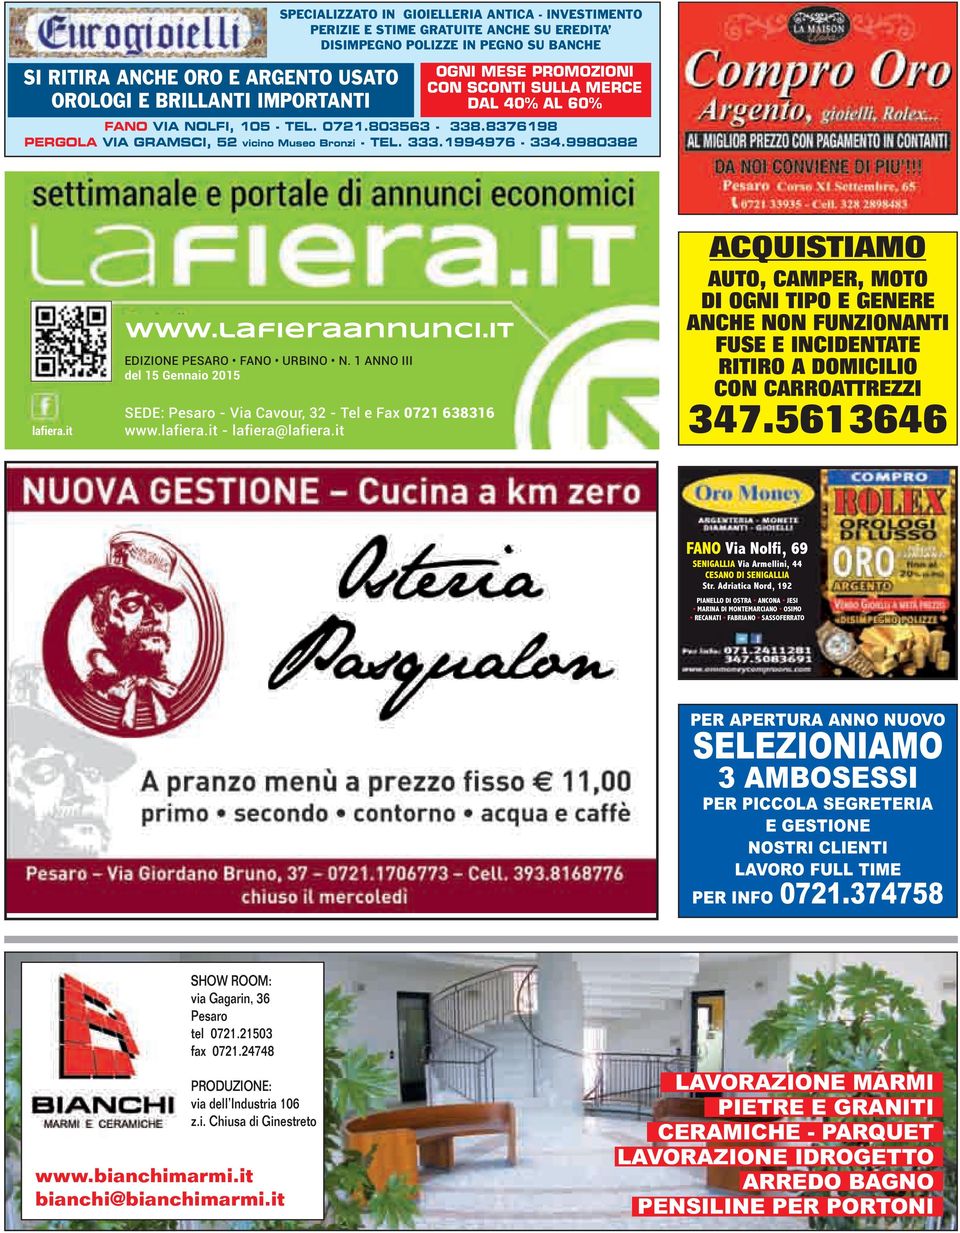 lafieraannunci.it EDIZIONE PESARO FANO URBINO N. 1 ANNO III del 15 Gennaio 2015 SEDE: Pesaro - Via Cavour, 32 - Tel e Fax 0721 638316 www.lafiera.it - lafiera@lafiera.